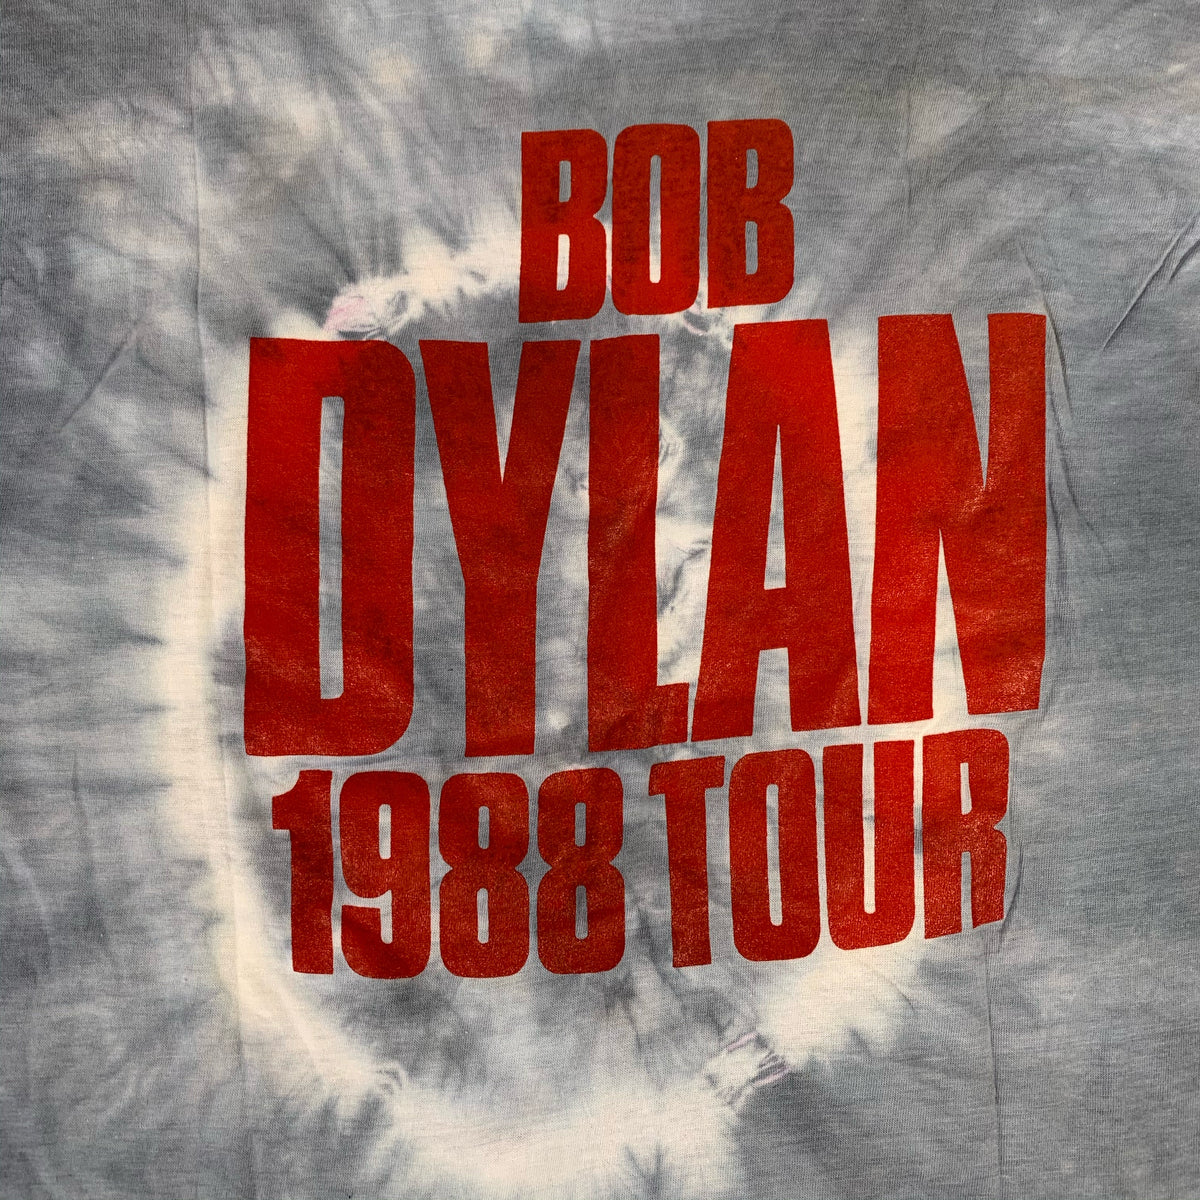 Vintage Bob Dylan &quot;1988&quot; Tie-Dye T-Shirt